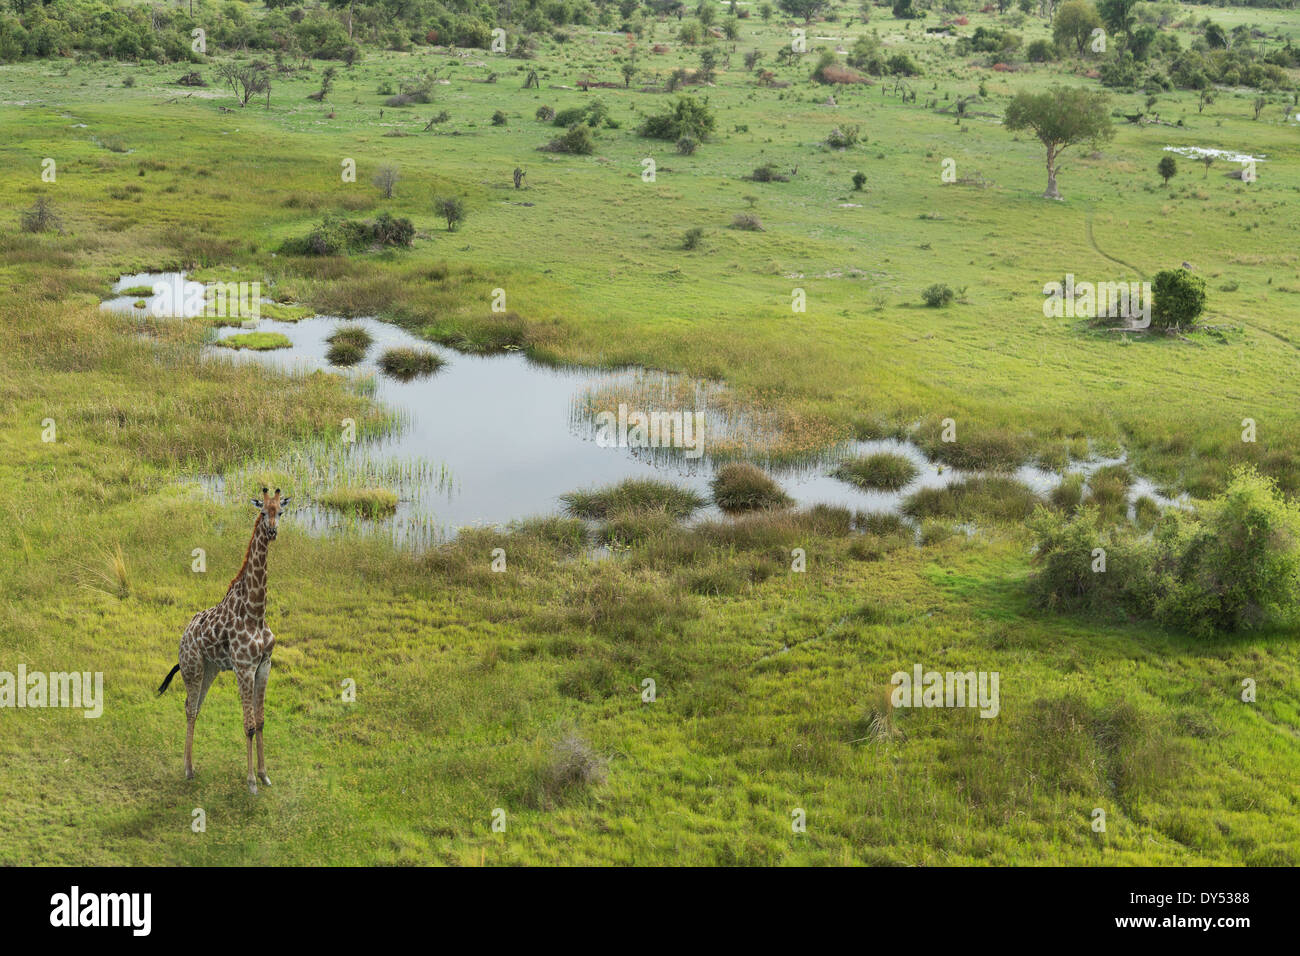 Aerial view of giraffe, Okavango Delta, Chobe National Park, Botswana, Africa Stock Photo